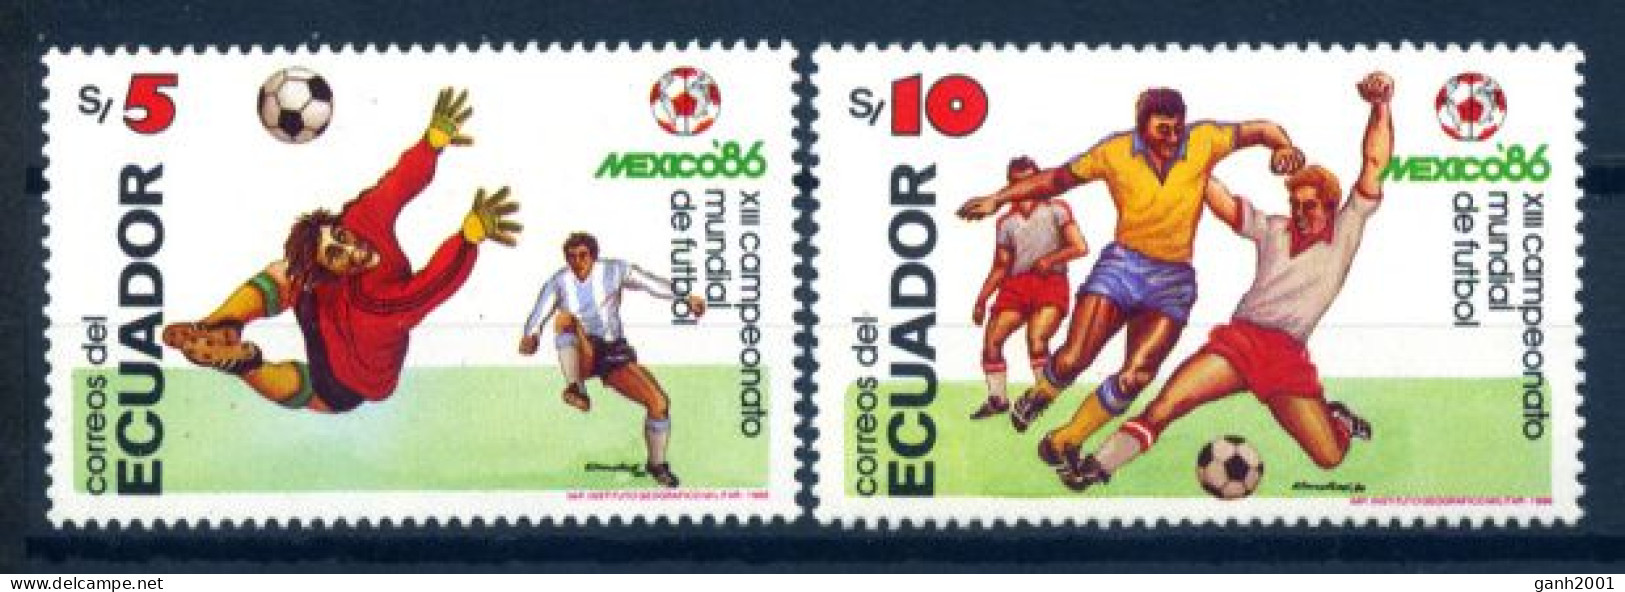 Ecuador 1986 / Football Soccer FIFA World Cup Mexico MNH Fútbol Copa Mundial / Hf04  32-2 - 1986 – Mexico